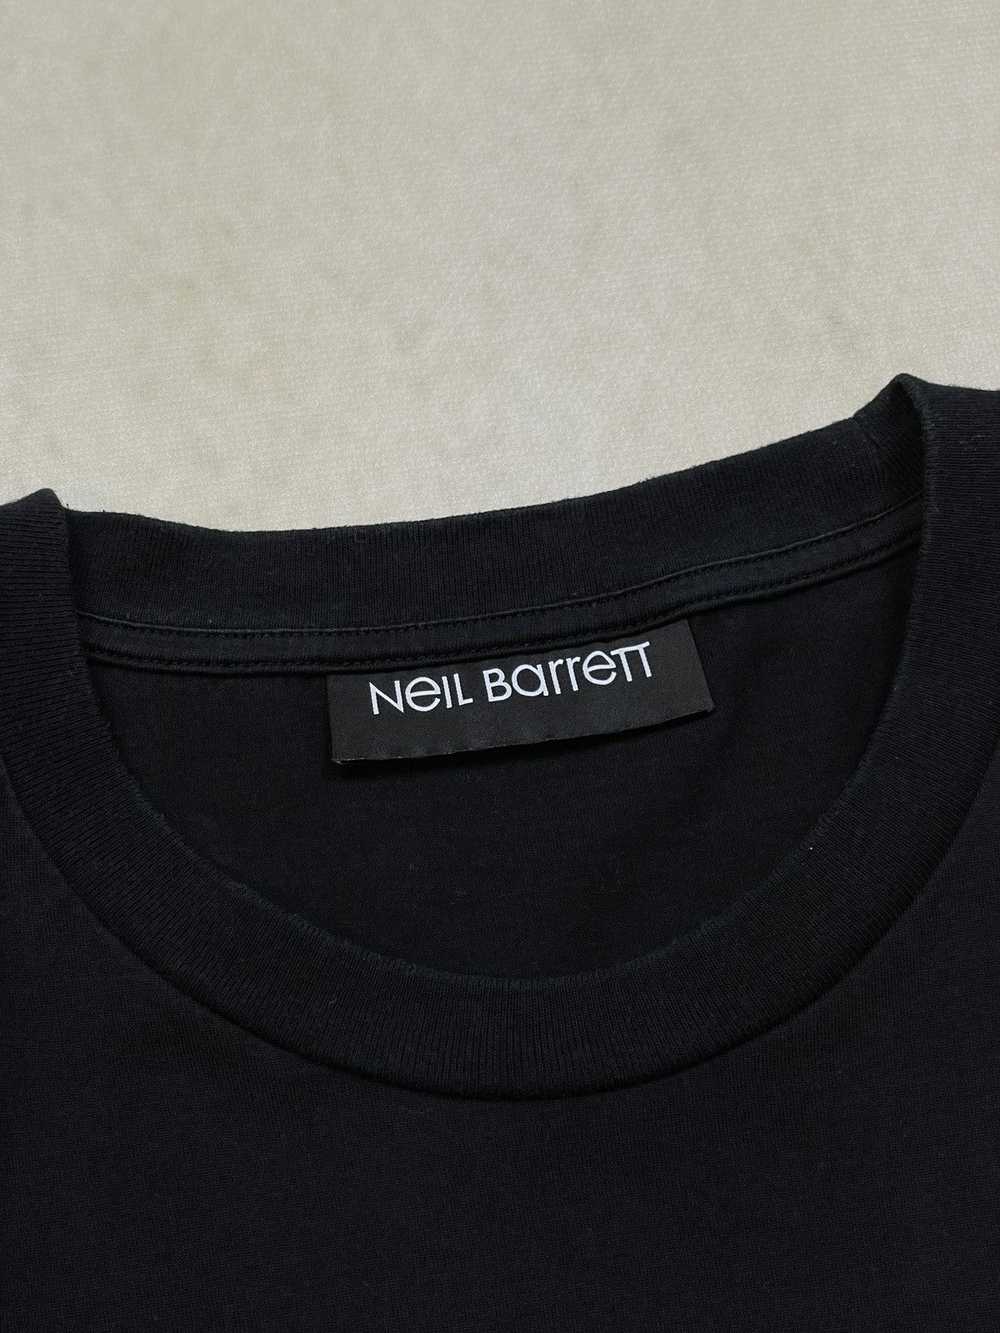 Designer × Luxury × Neil Barrett 🔥RARE NEIL BARR… - image 6